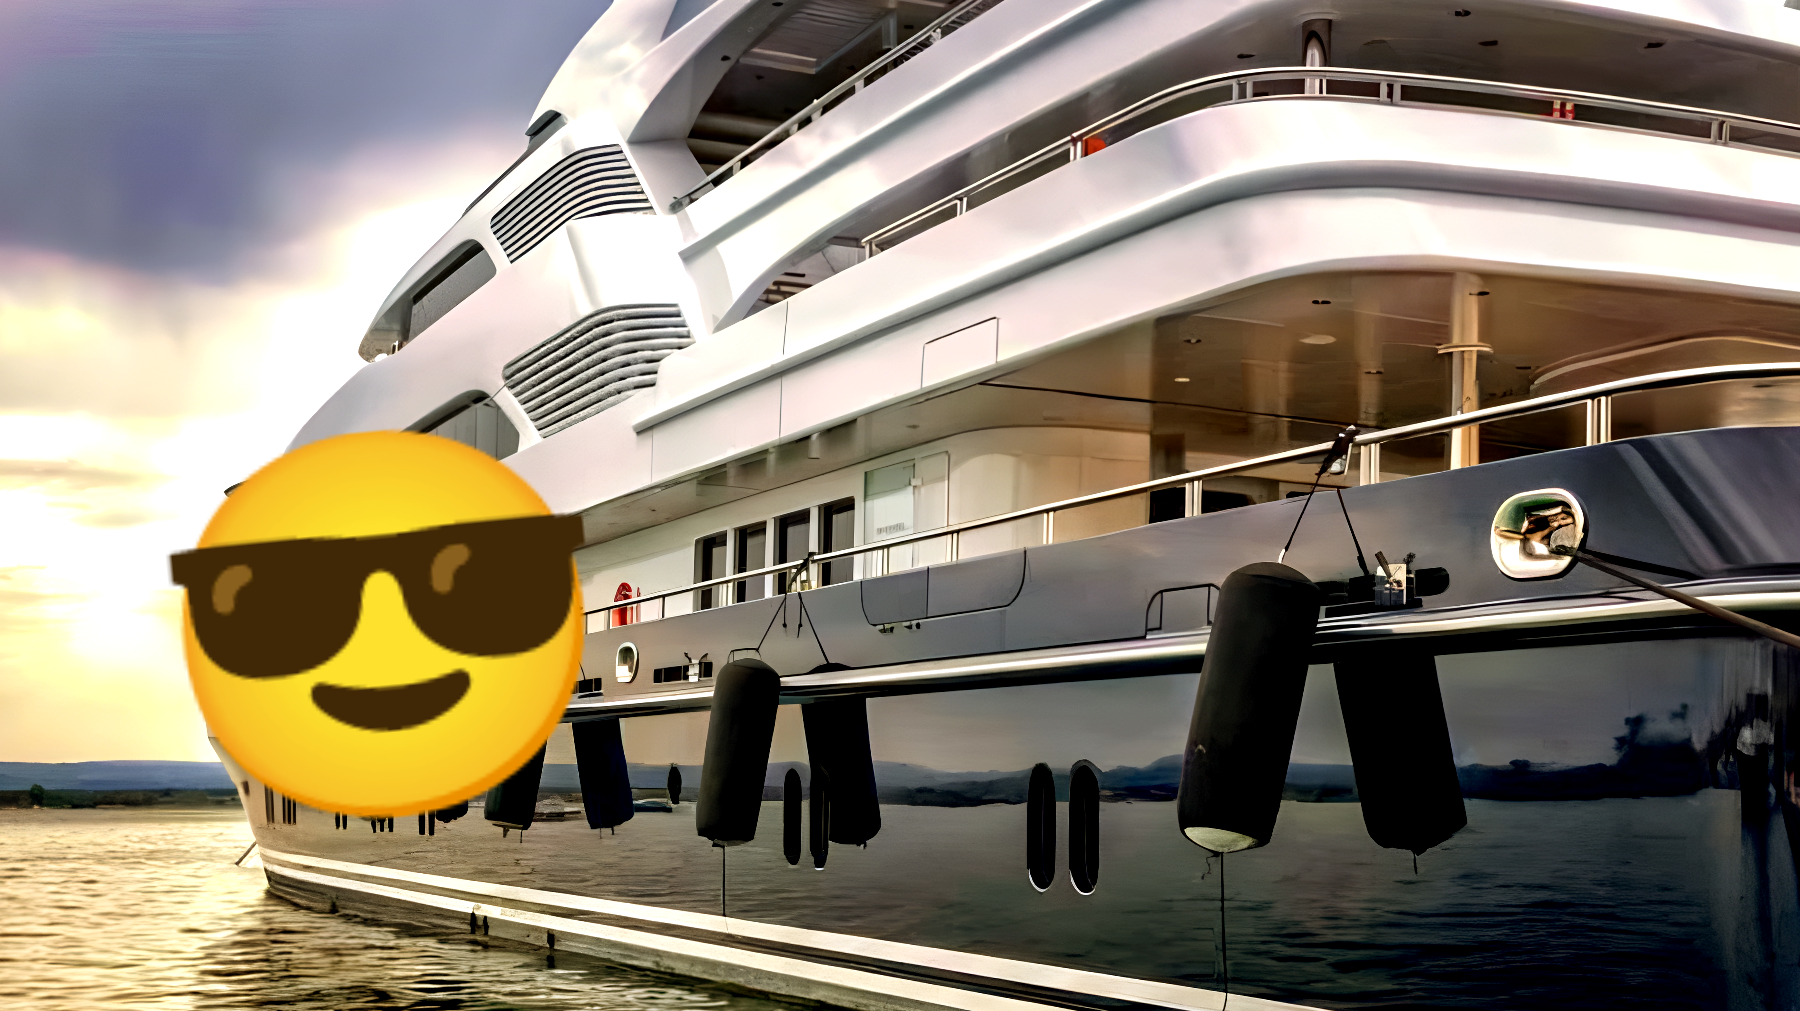 Scopri il lusso di una vacanza in yacht: ti sveliamo il costo di una settimana senza folle